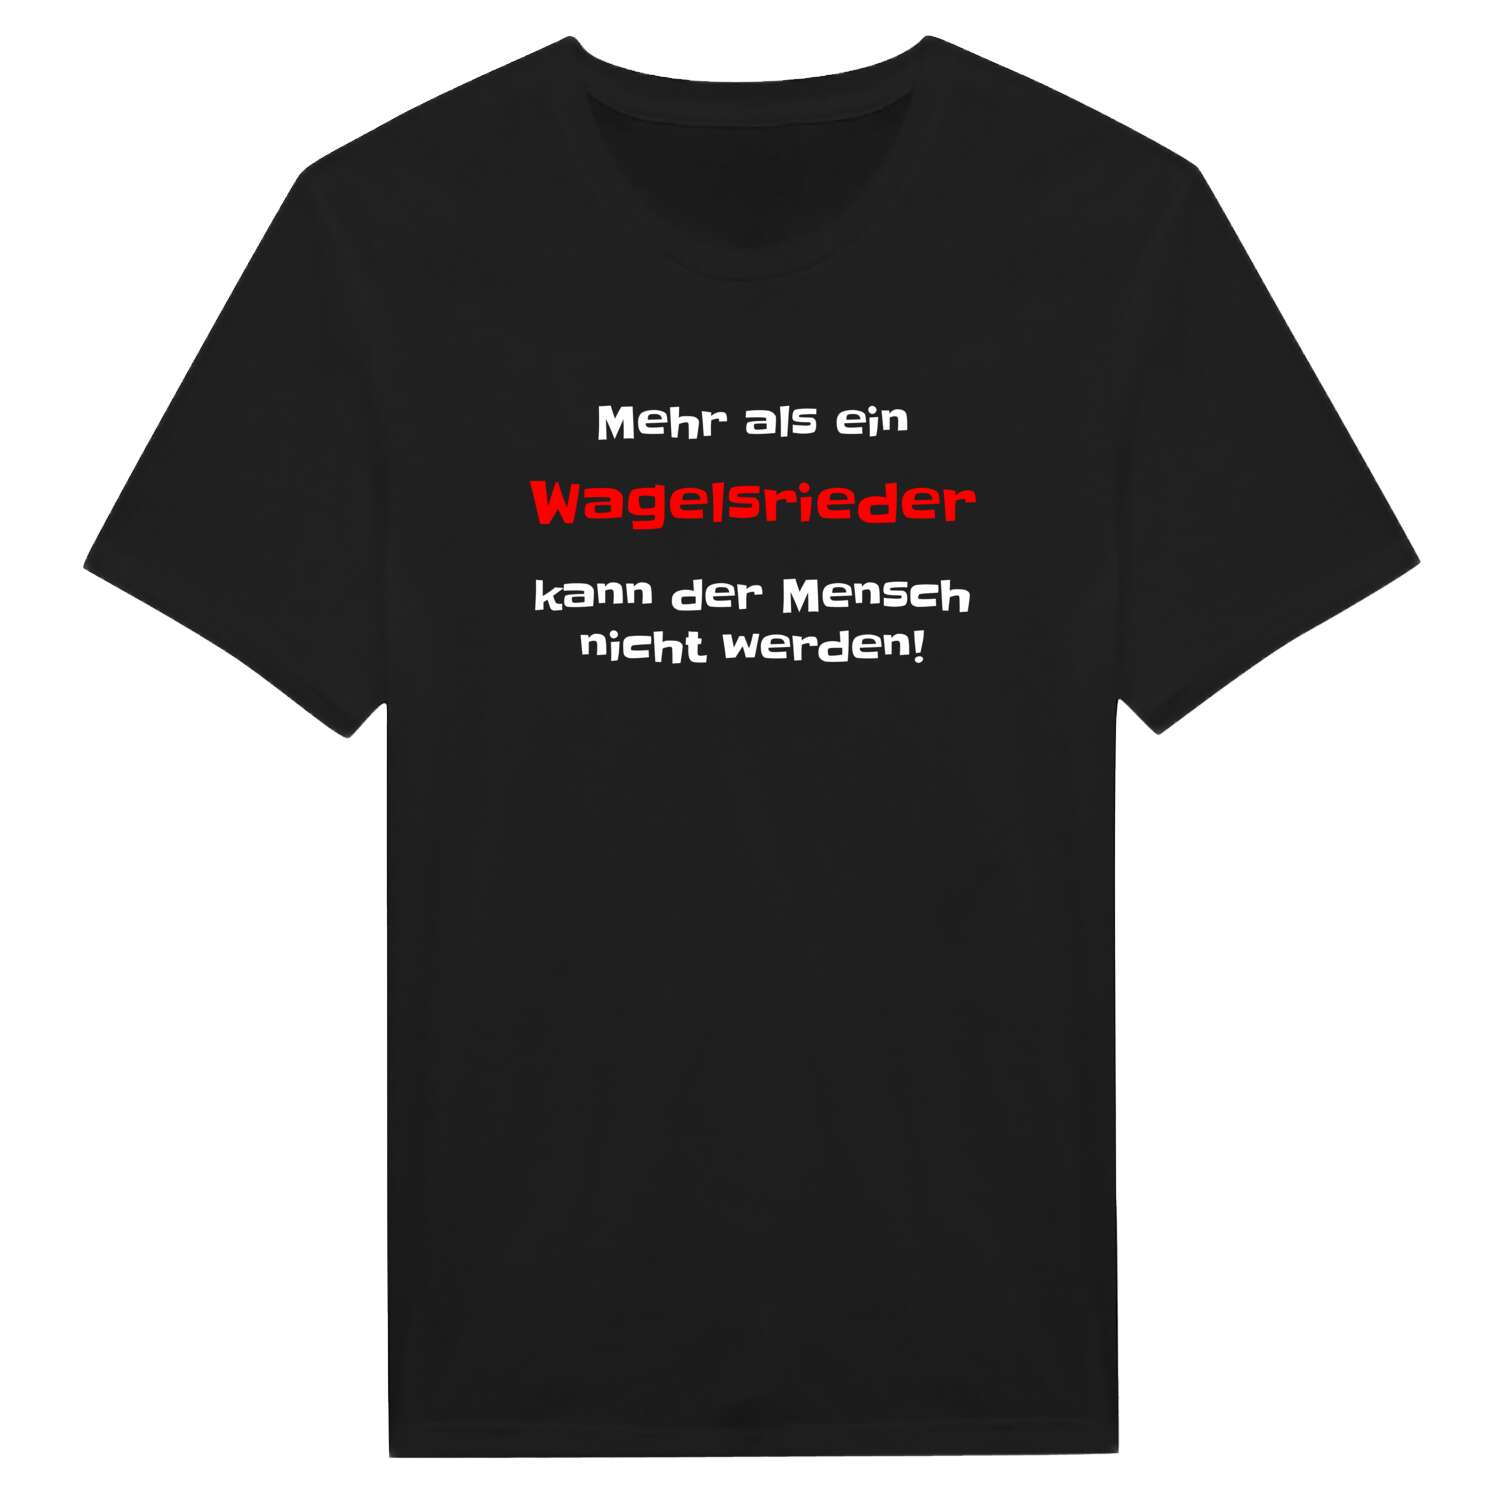 Wagelsried T-Shirt »Mehr als ein«